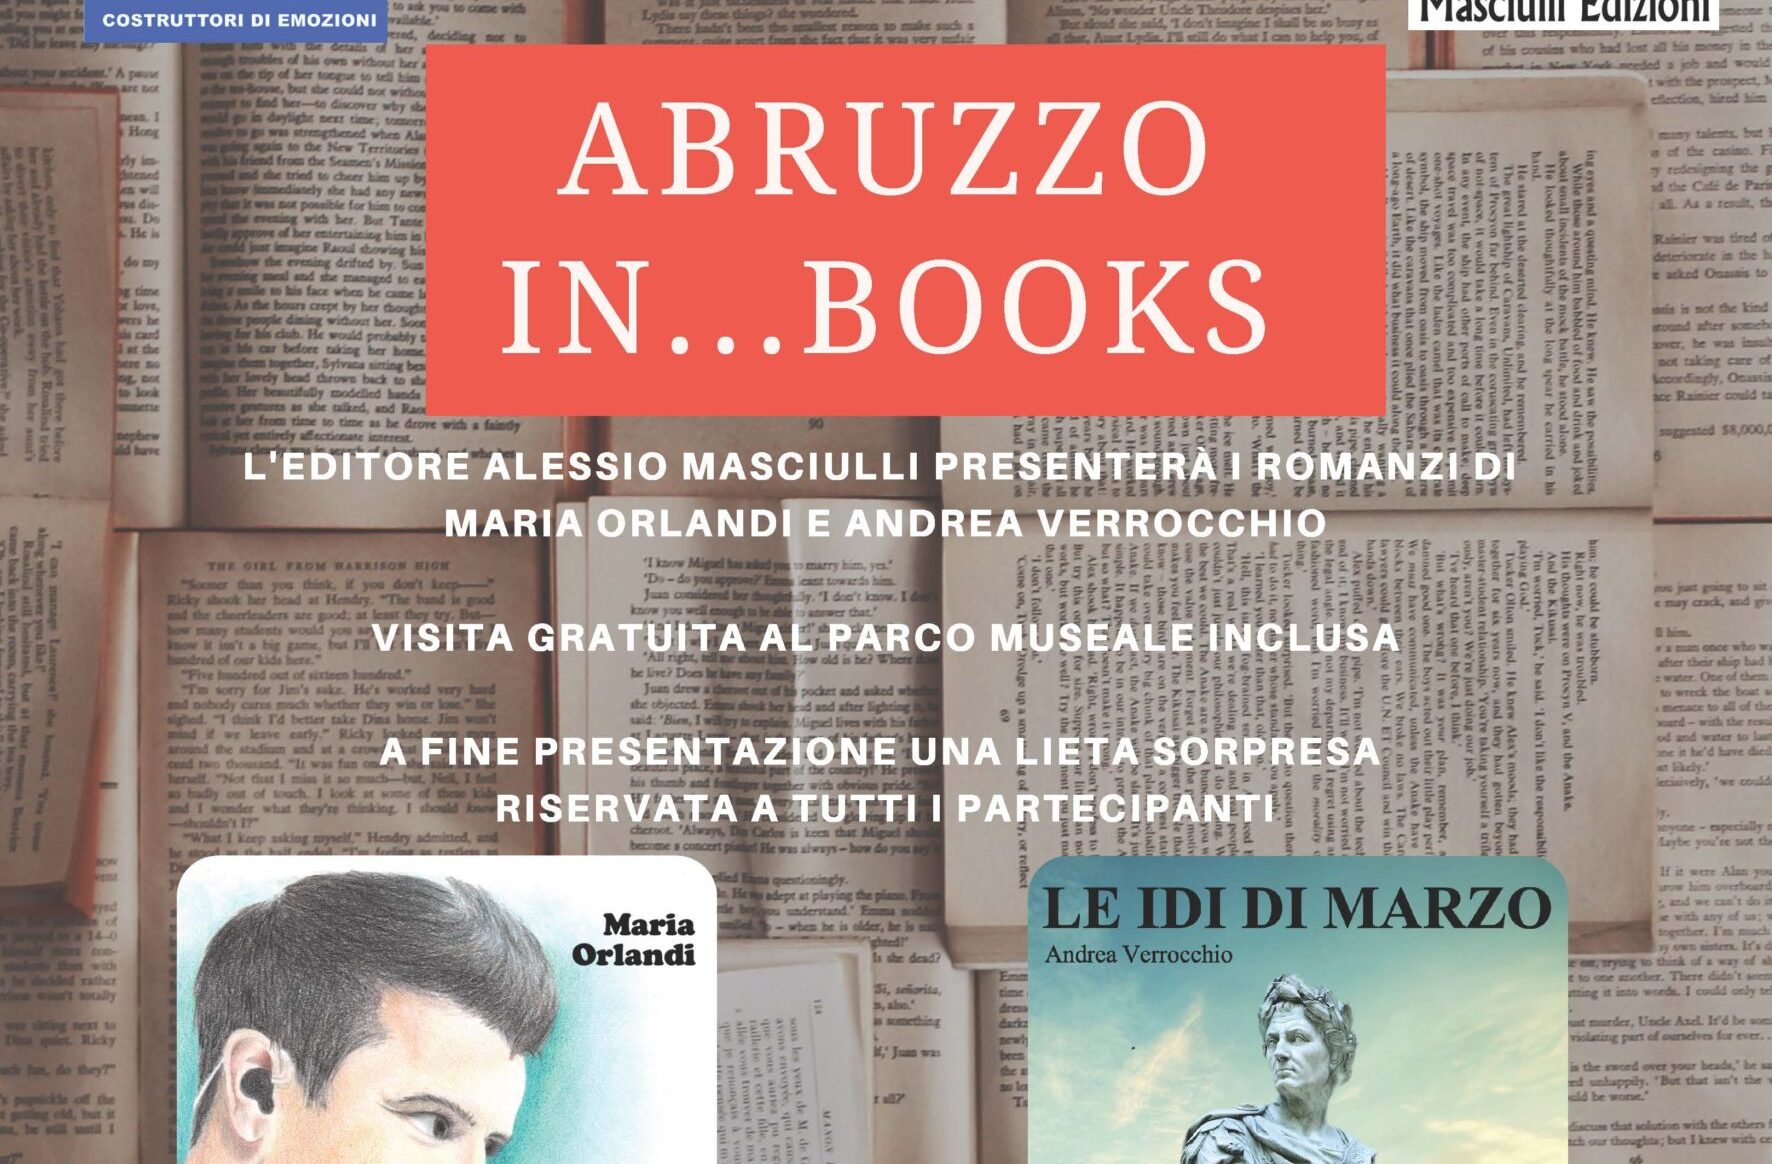 Libri&Editoria. Museo Michetti: Abruzzo…books, due libri, due storie di resilienza